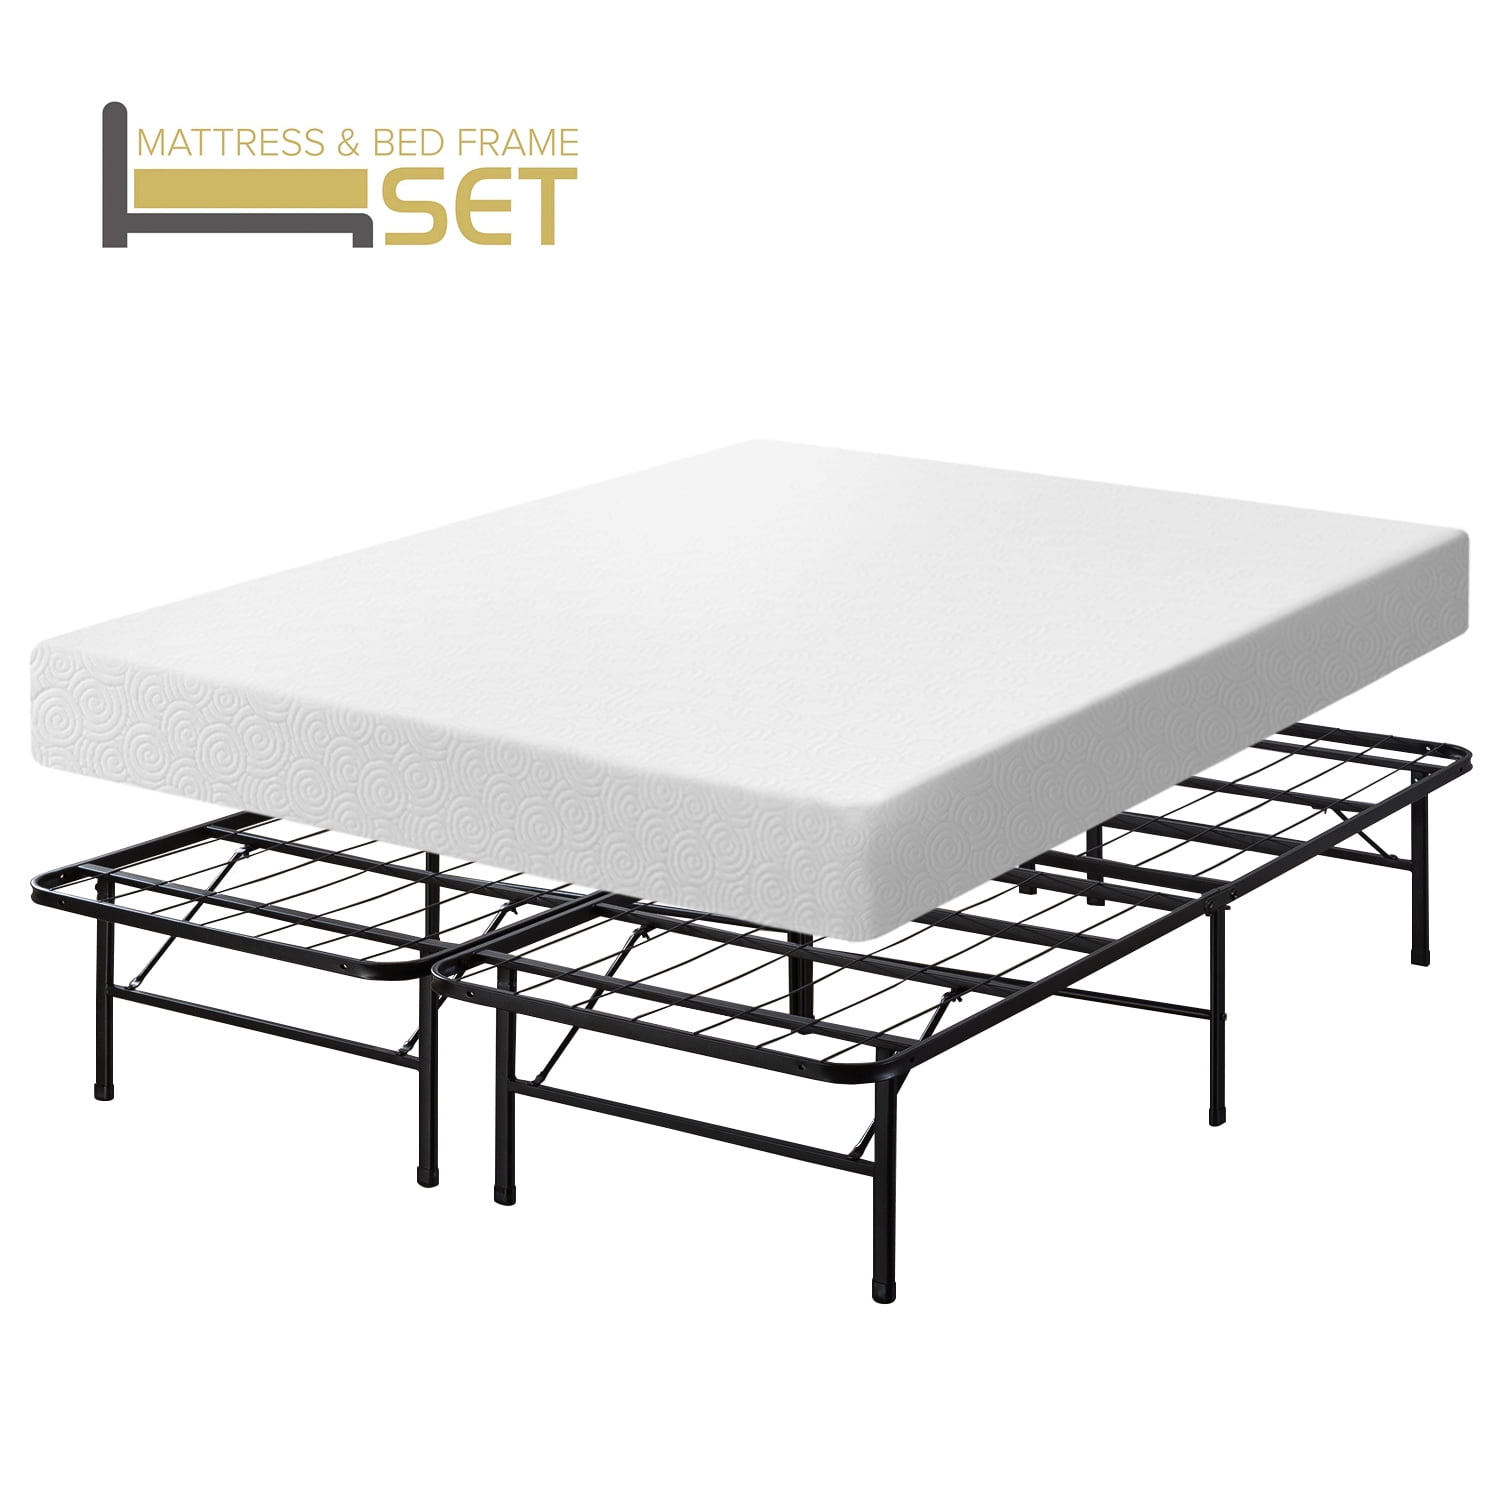 Innovated Platform Metal Bed Frame Set, Lull Metal Bed Frame Review